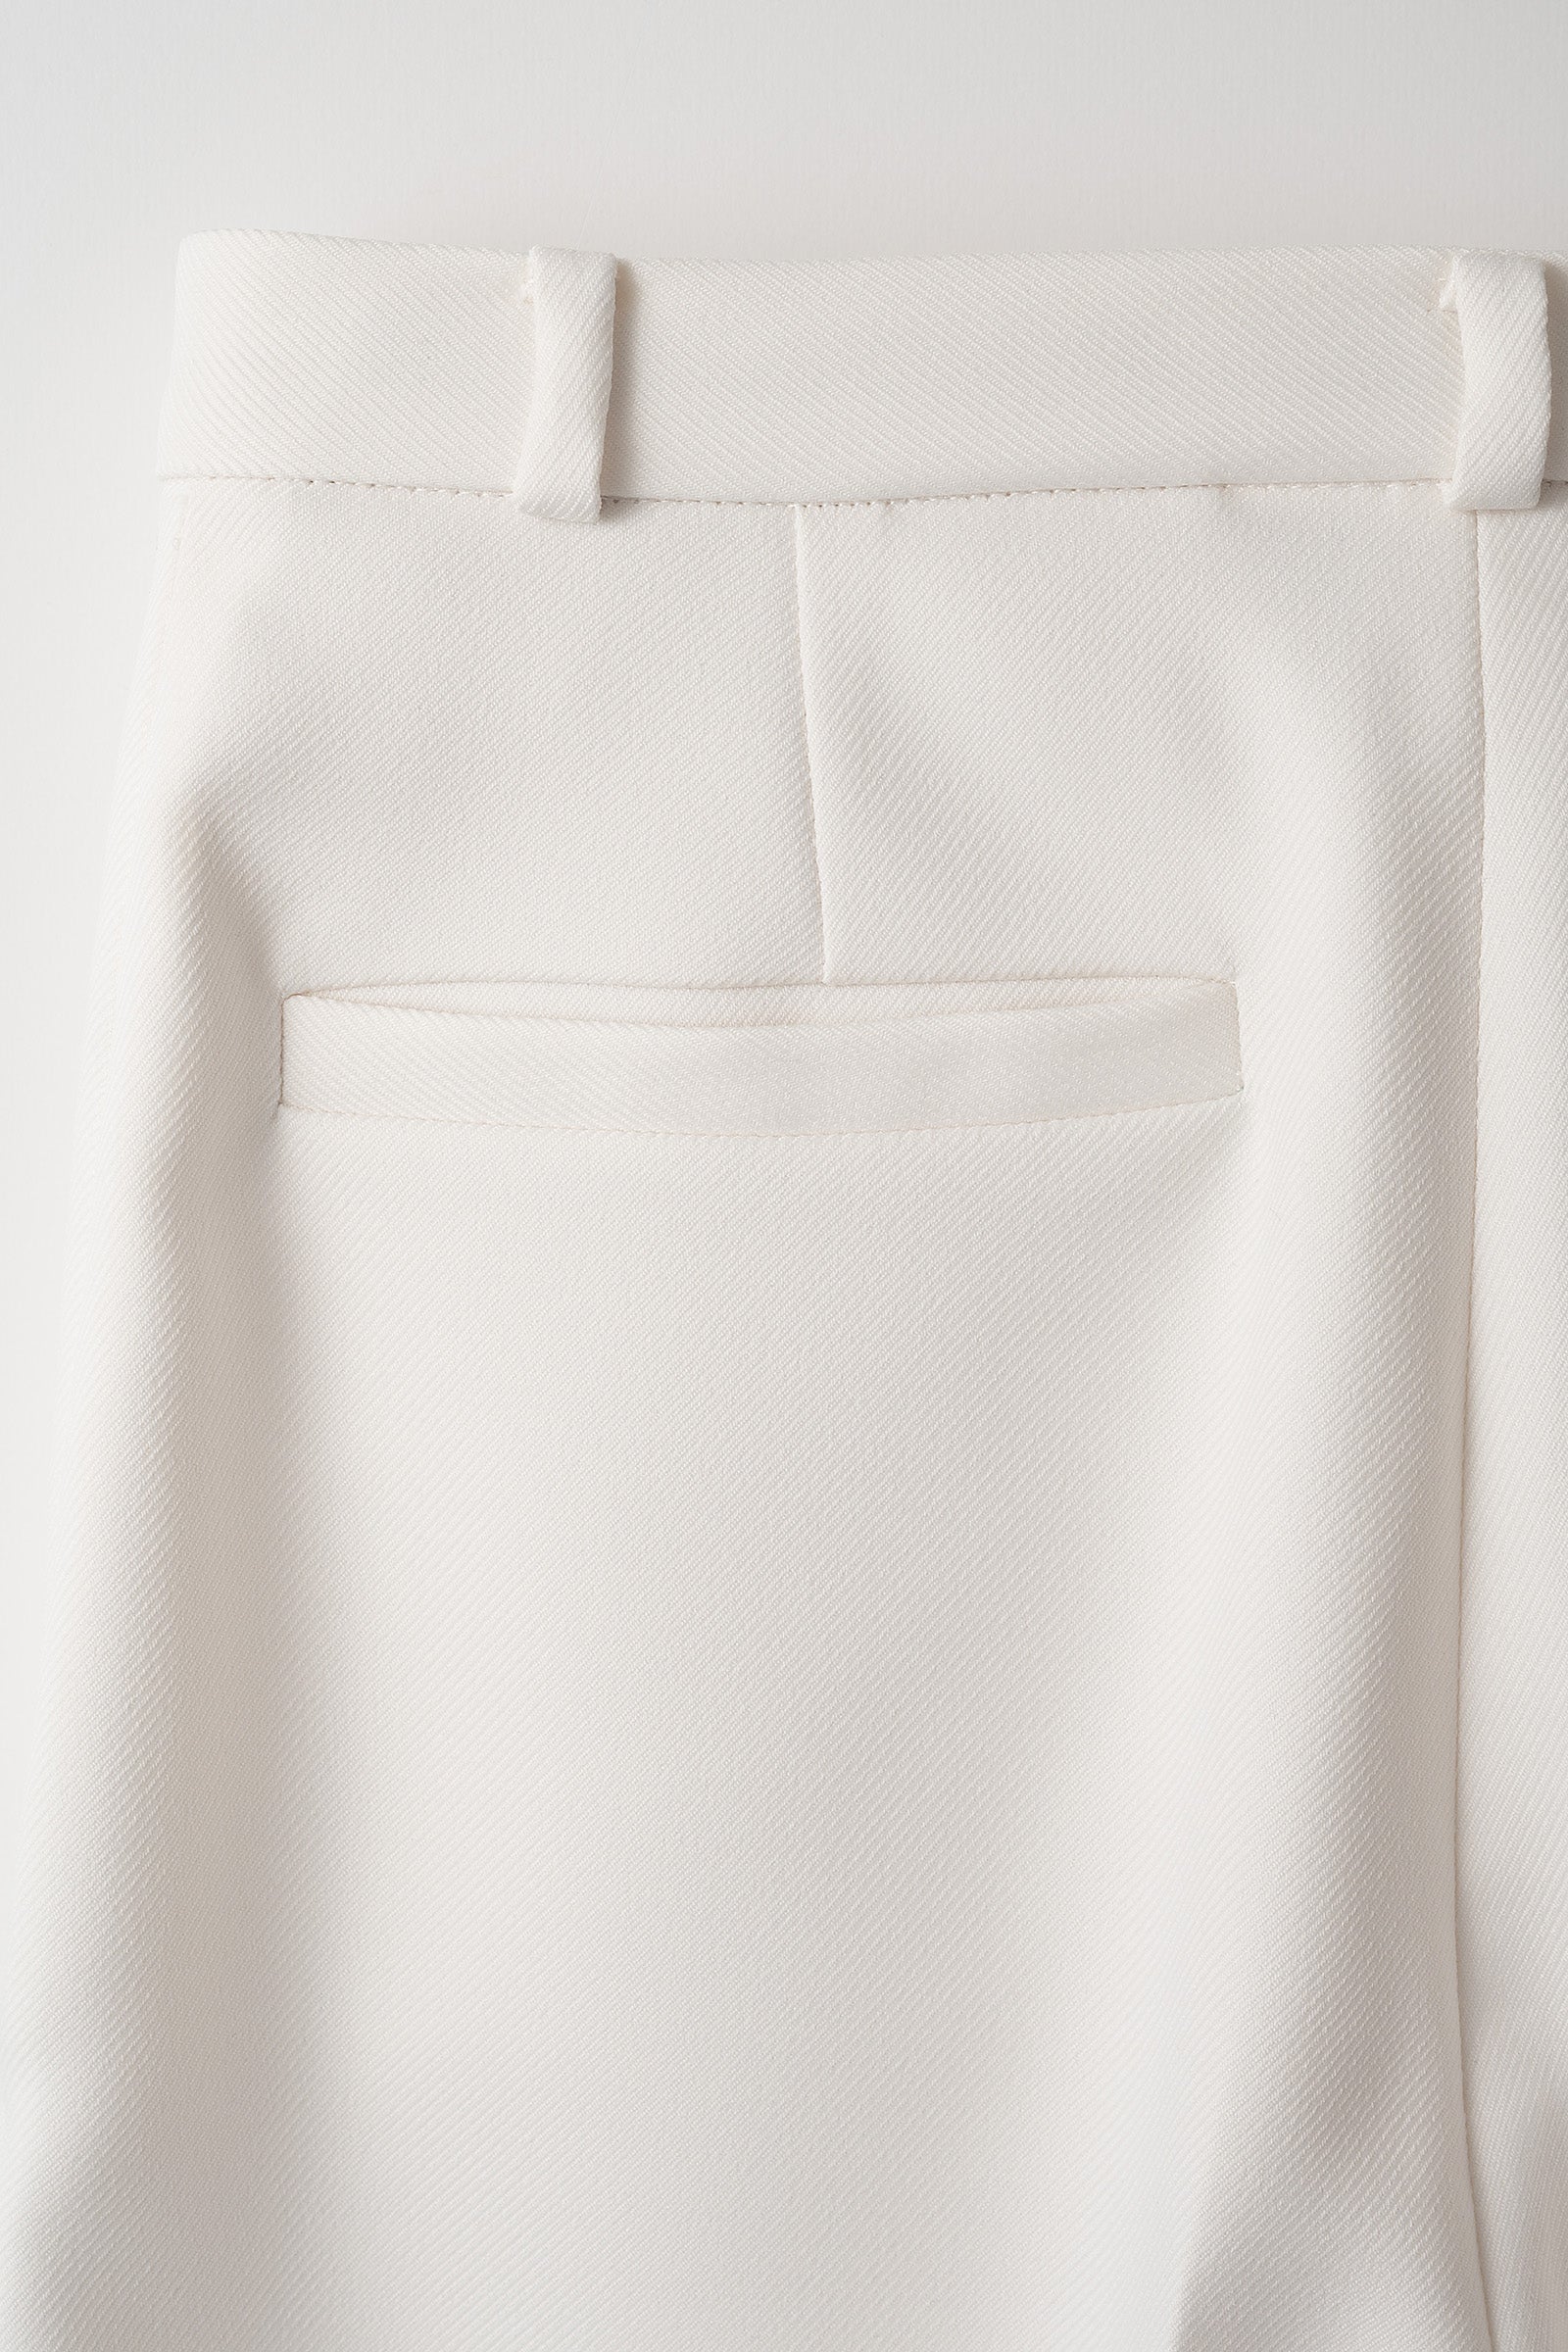 plain wide slacks (White)